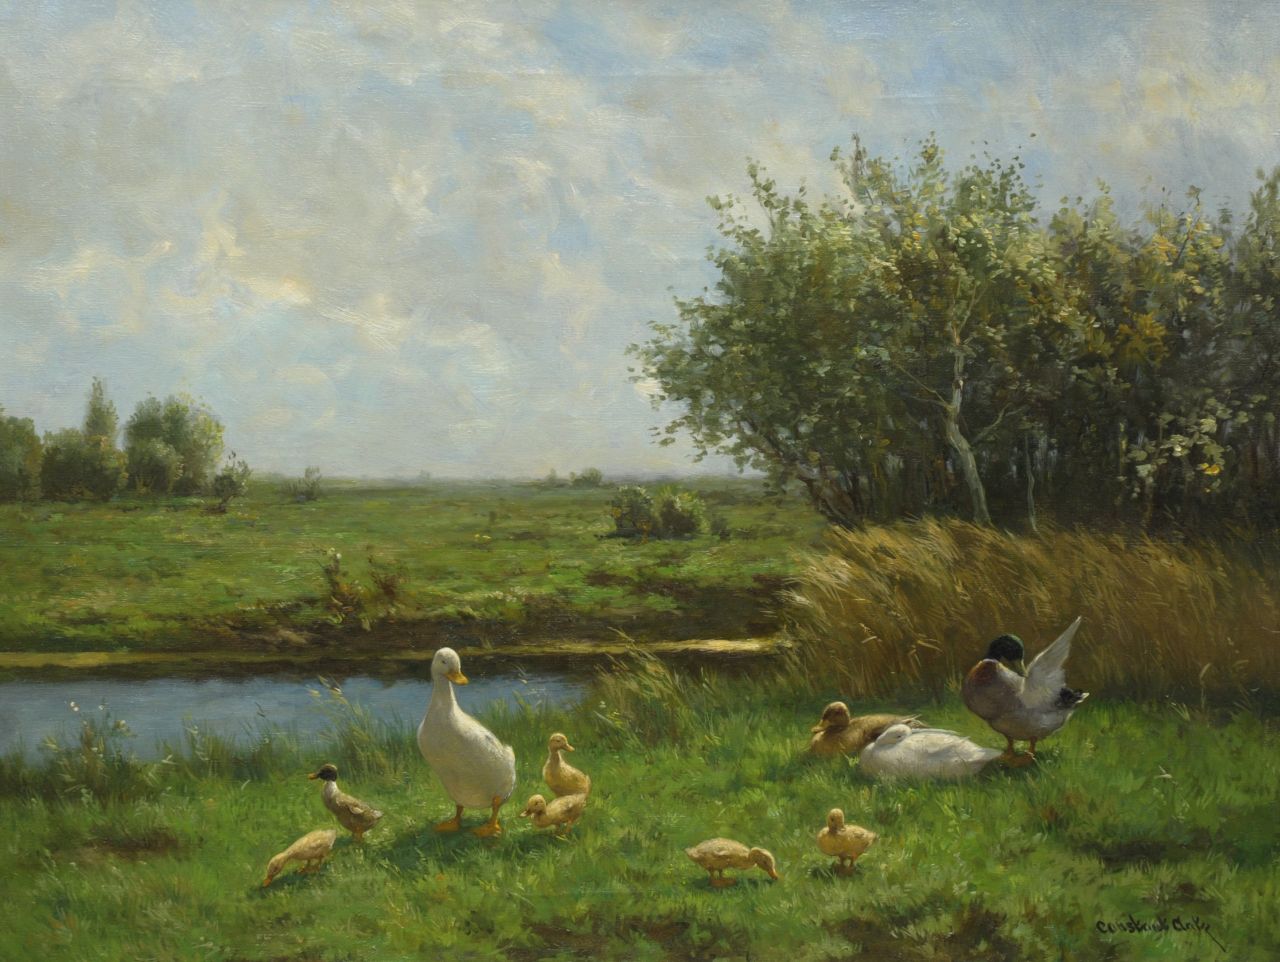 Artz C.D.L.  | 'Constant' David Ludovic Artz, Polder landscape with ducks, oil on canvas 60.5 x 80.0 cm, signed l.r.